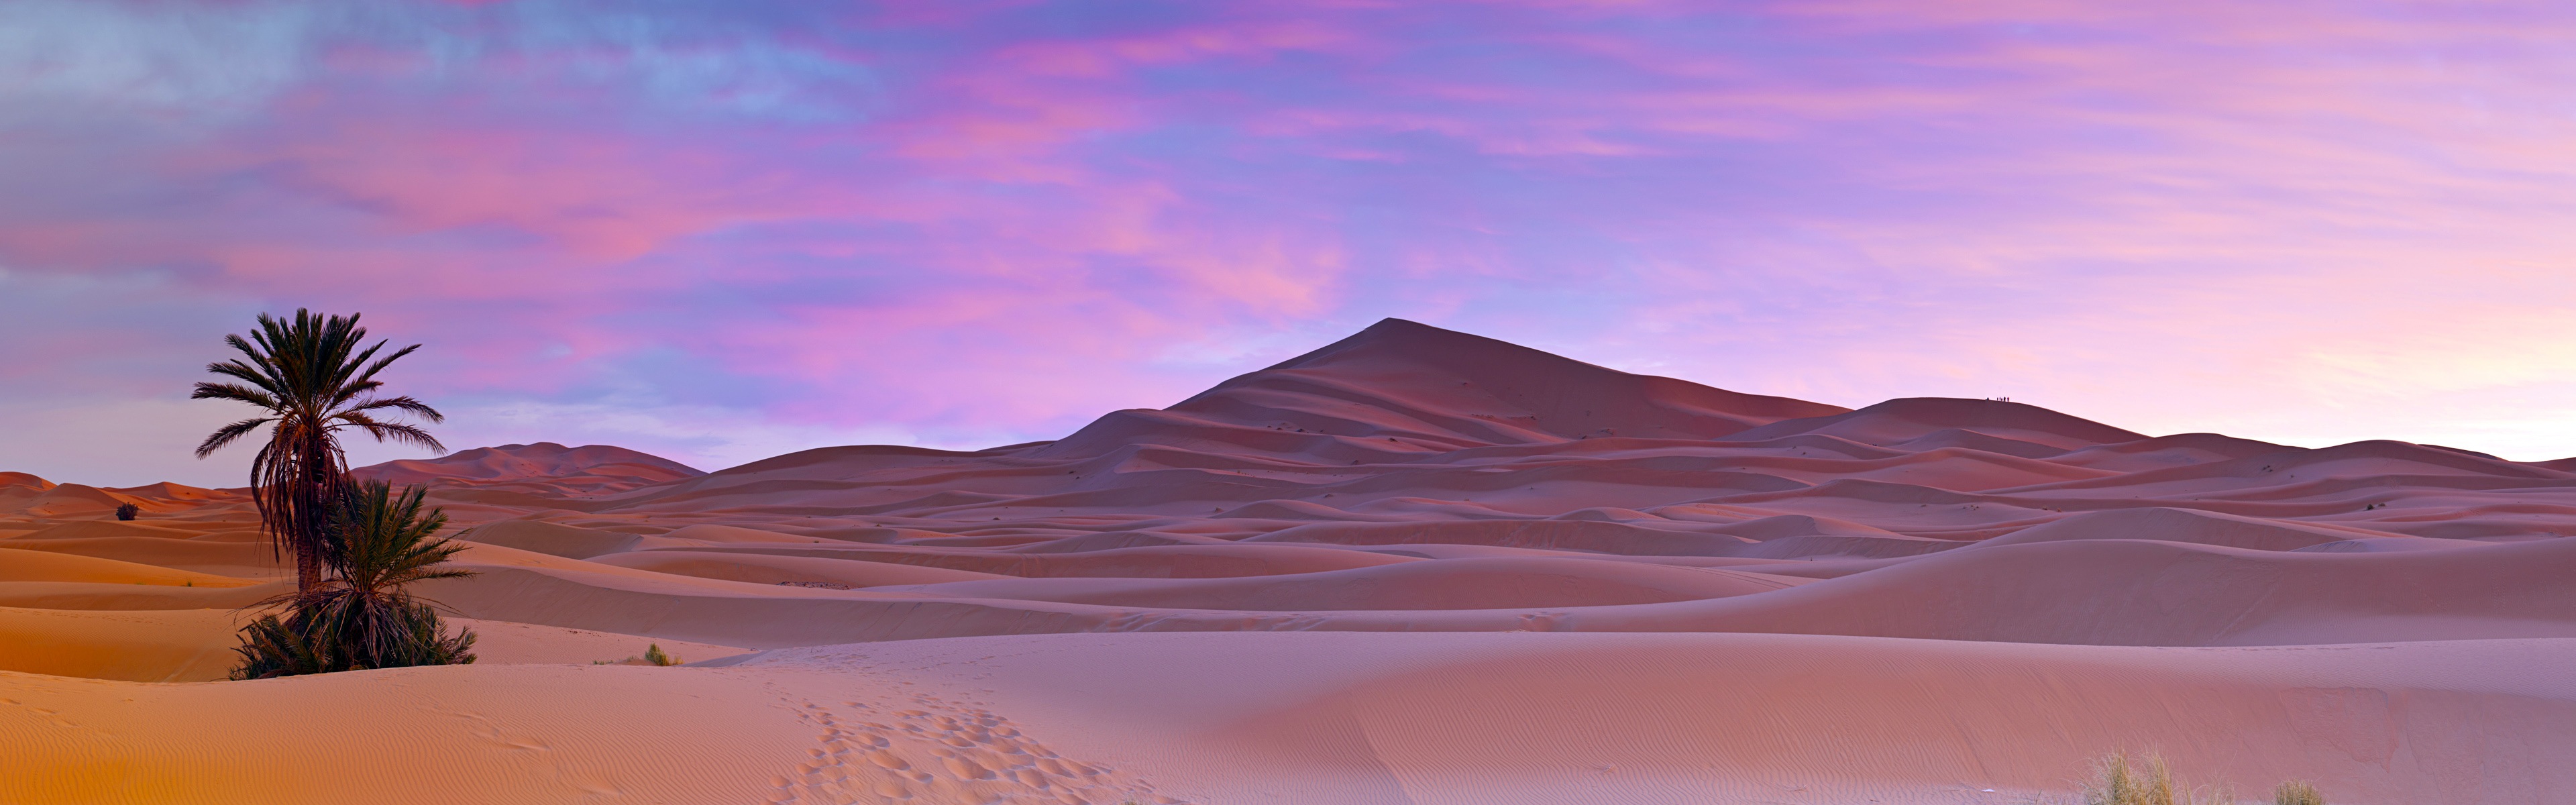 Горячие и засушливые пустыни, Windows 8 панорамные картинки на рабочий стол #1 - 3840x1200